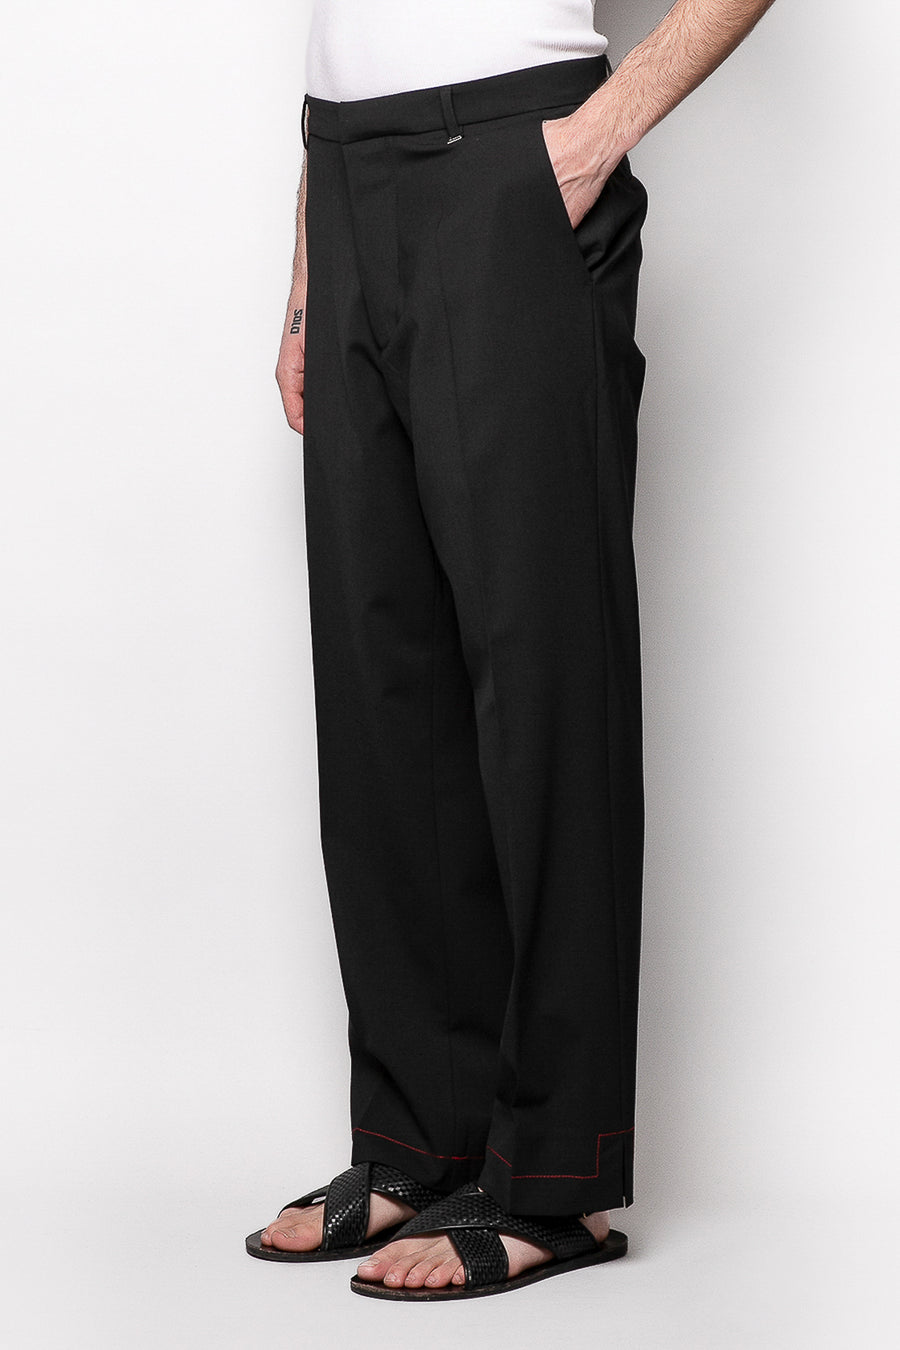 Pantalone fondo ampio con cuciture a contrasto in misto lana - Nero